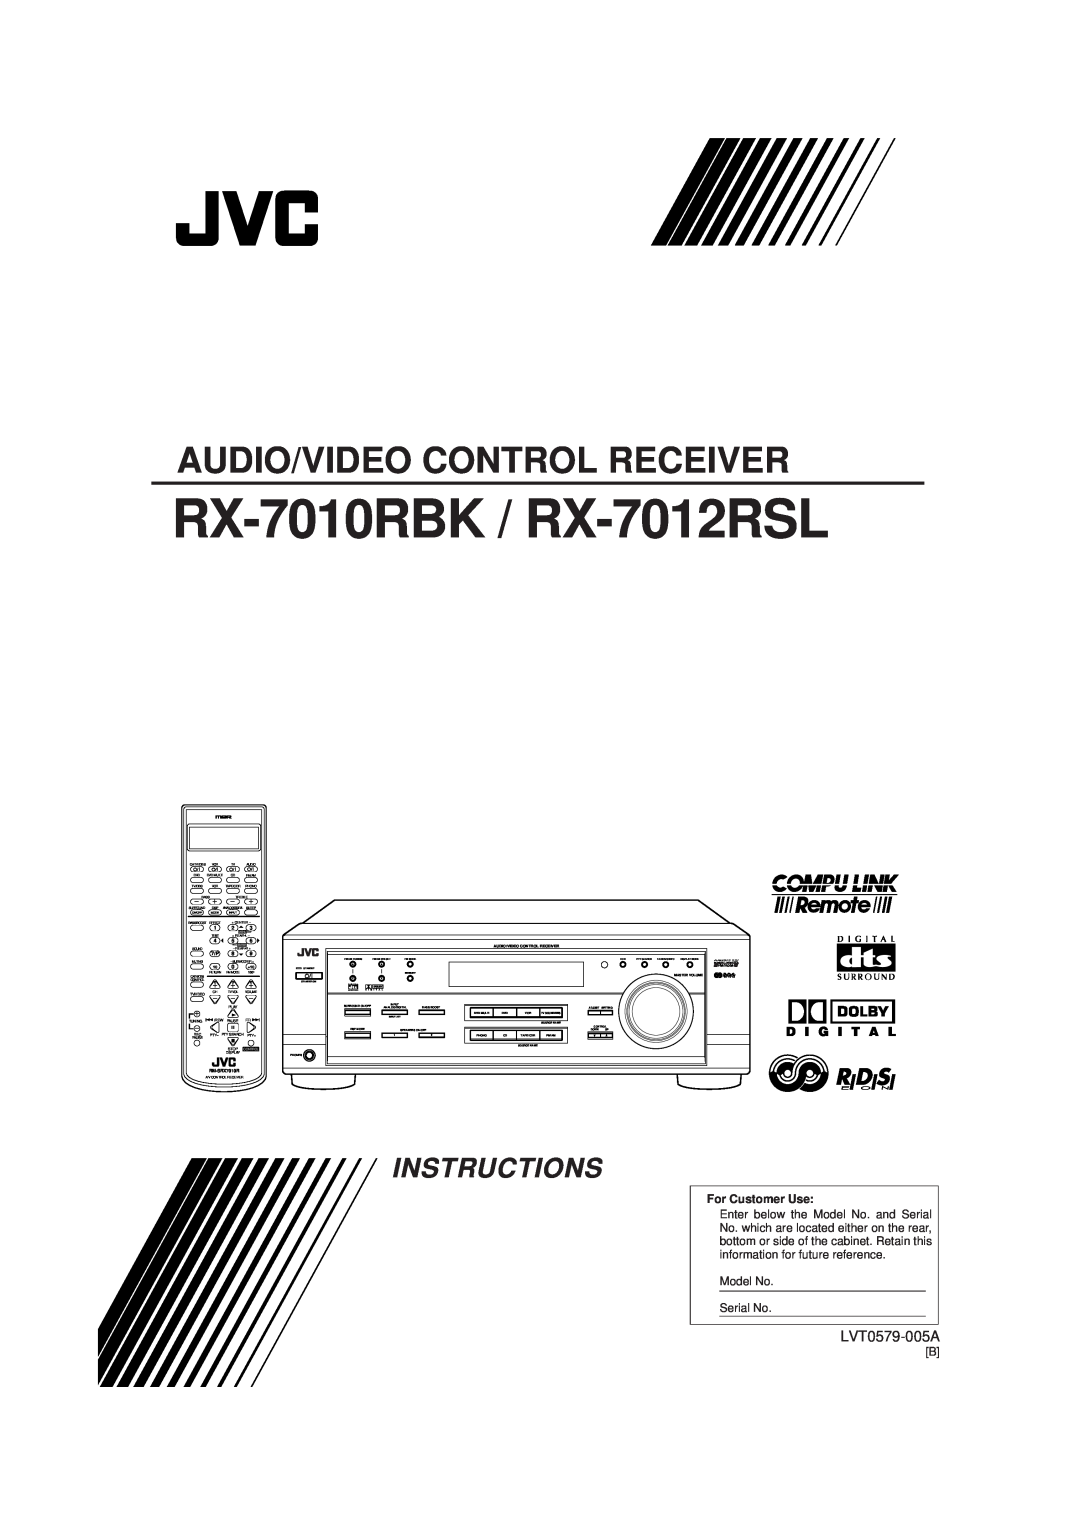 JVC manual RX-7010RBK / RX-7012RSL, Audio/Video Control Receiver, Instructions, LVT0579-005A, D I G I T A L, Menu 